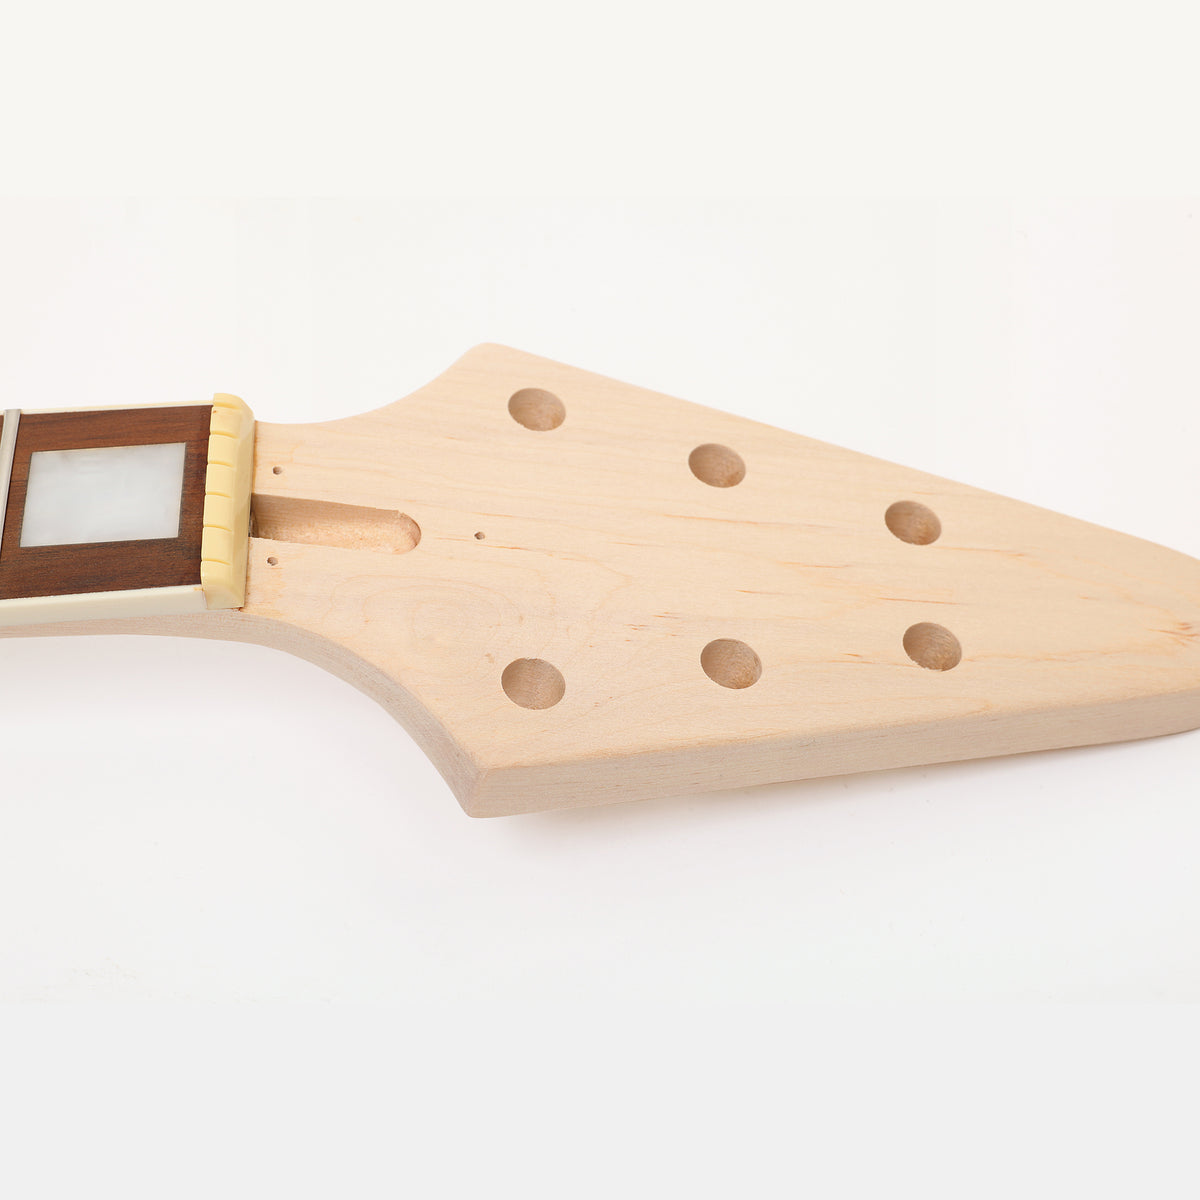 Flying-V DIY Guitar Kit Headstock